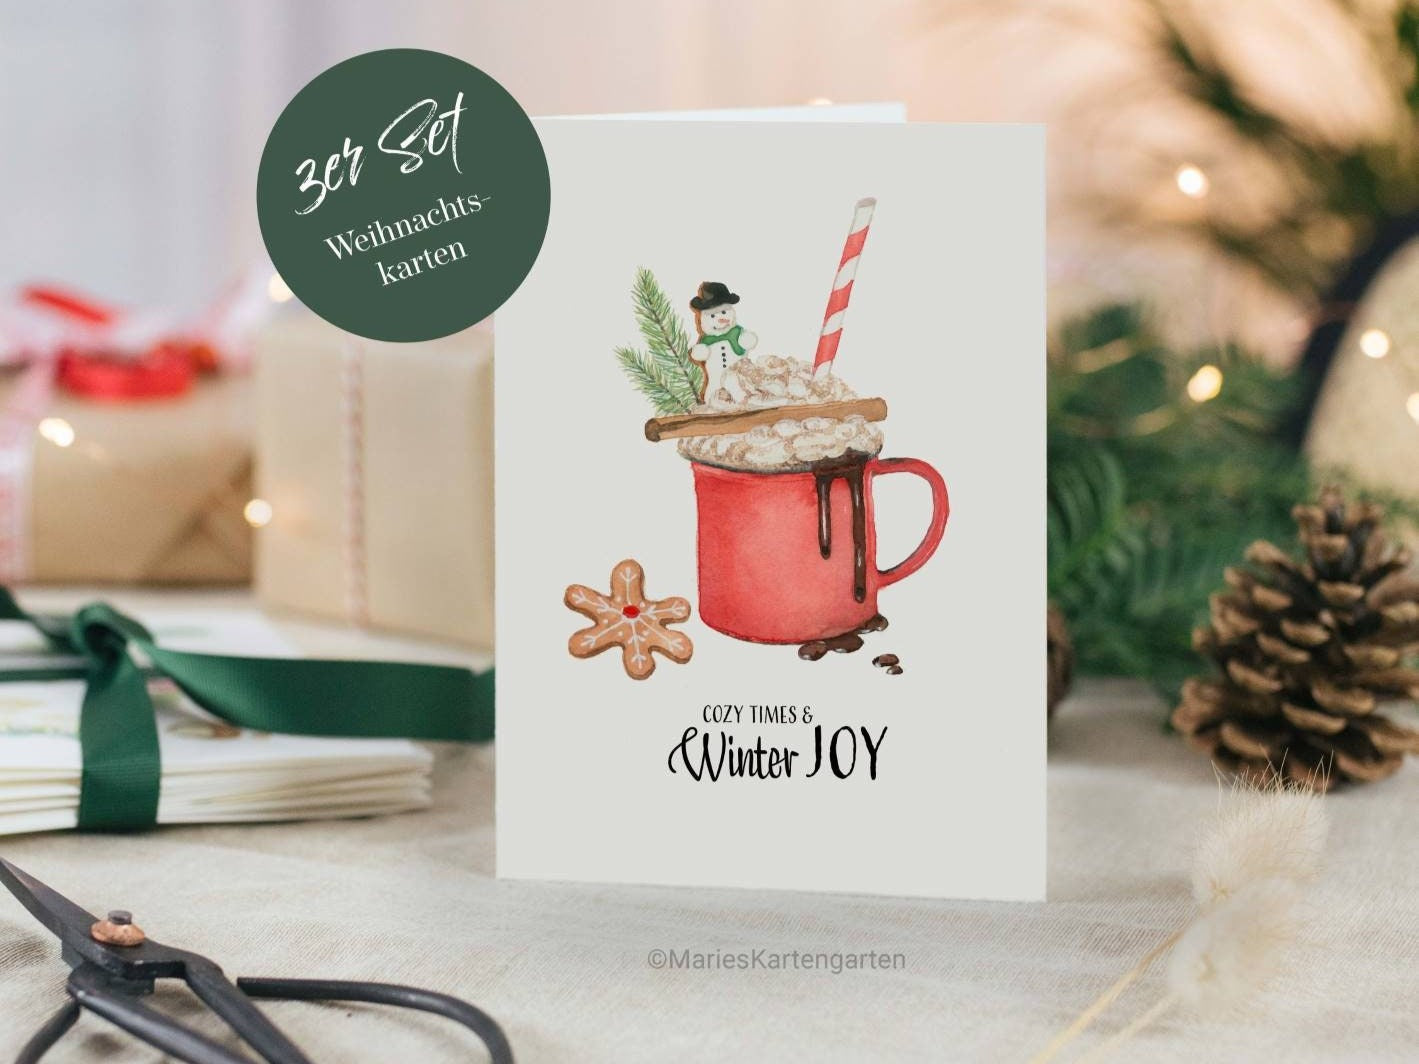 3er Set Weihnachtskarten incl. Briefumschlag - Cozy Times & Winter Joy